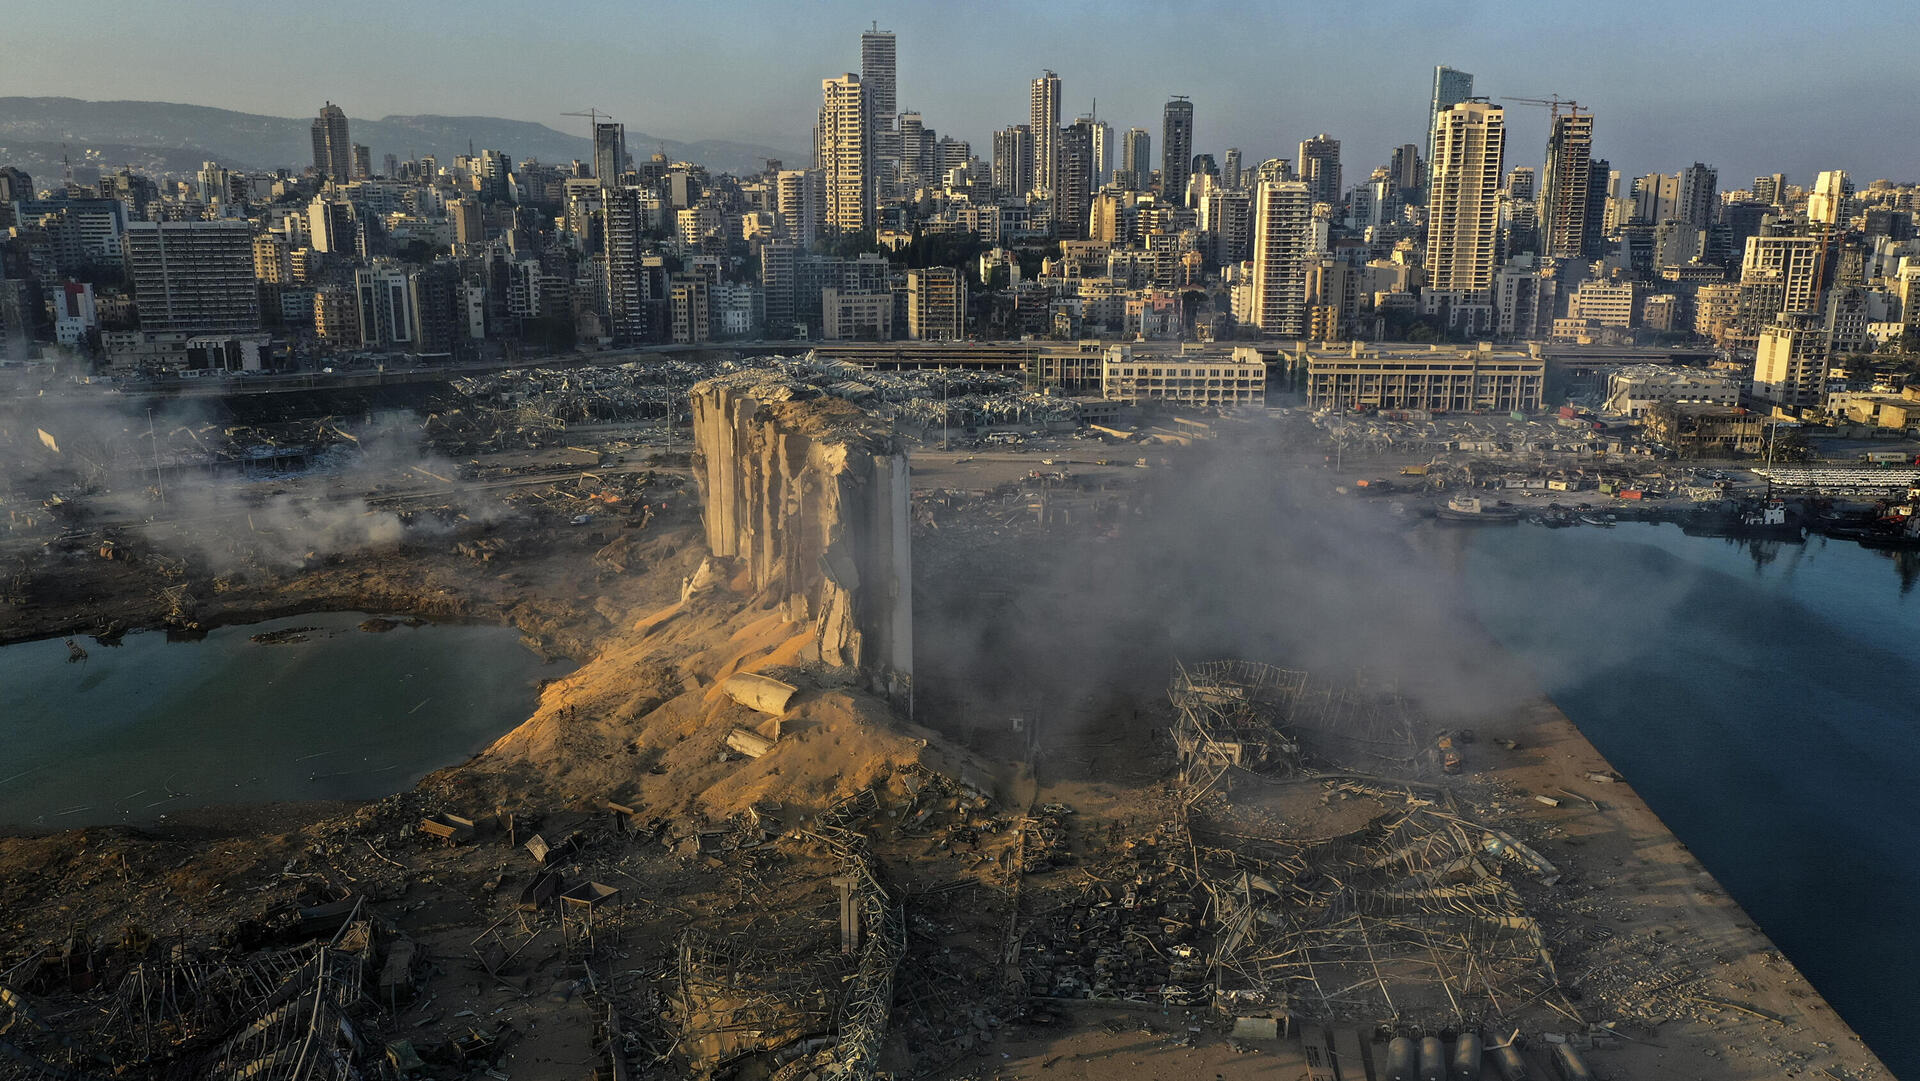 הנזק מהפיצוץ בנמל ביירות ביוני 2021, צילום מועמד לפוליצר של חוסיין מאלה מסוכנות איי.פי. בכמה יימכר בתור ?